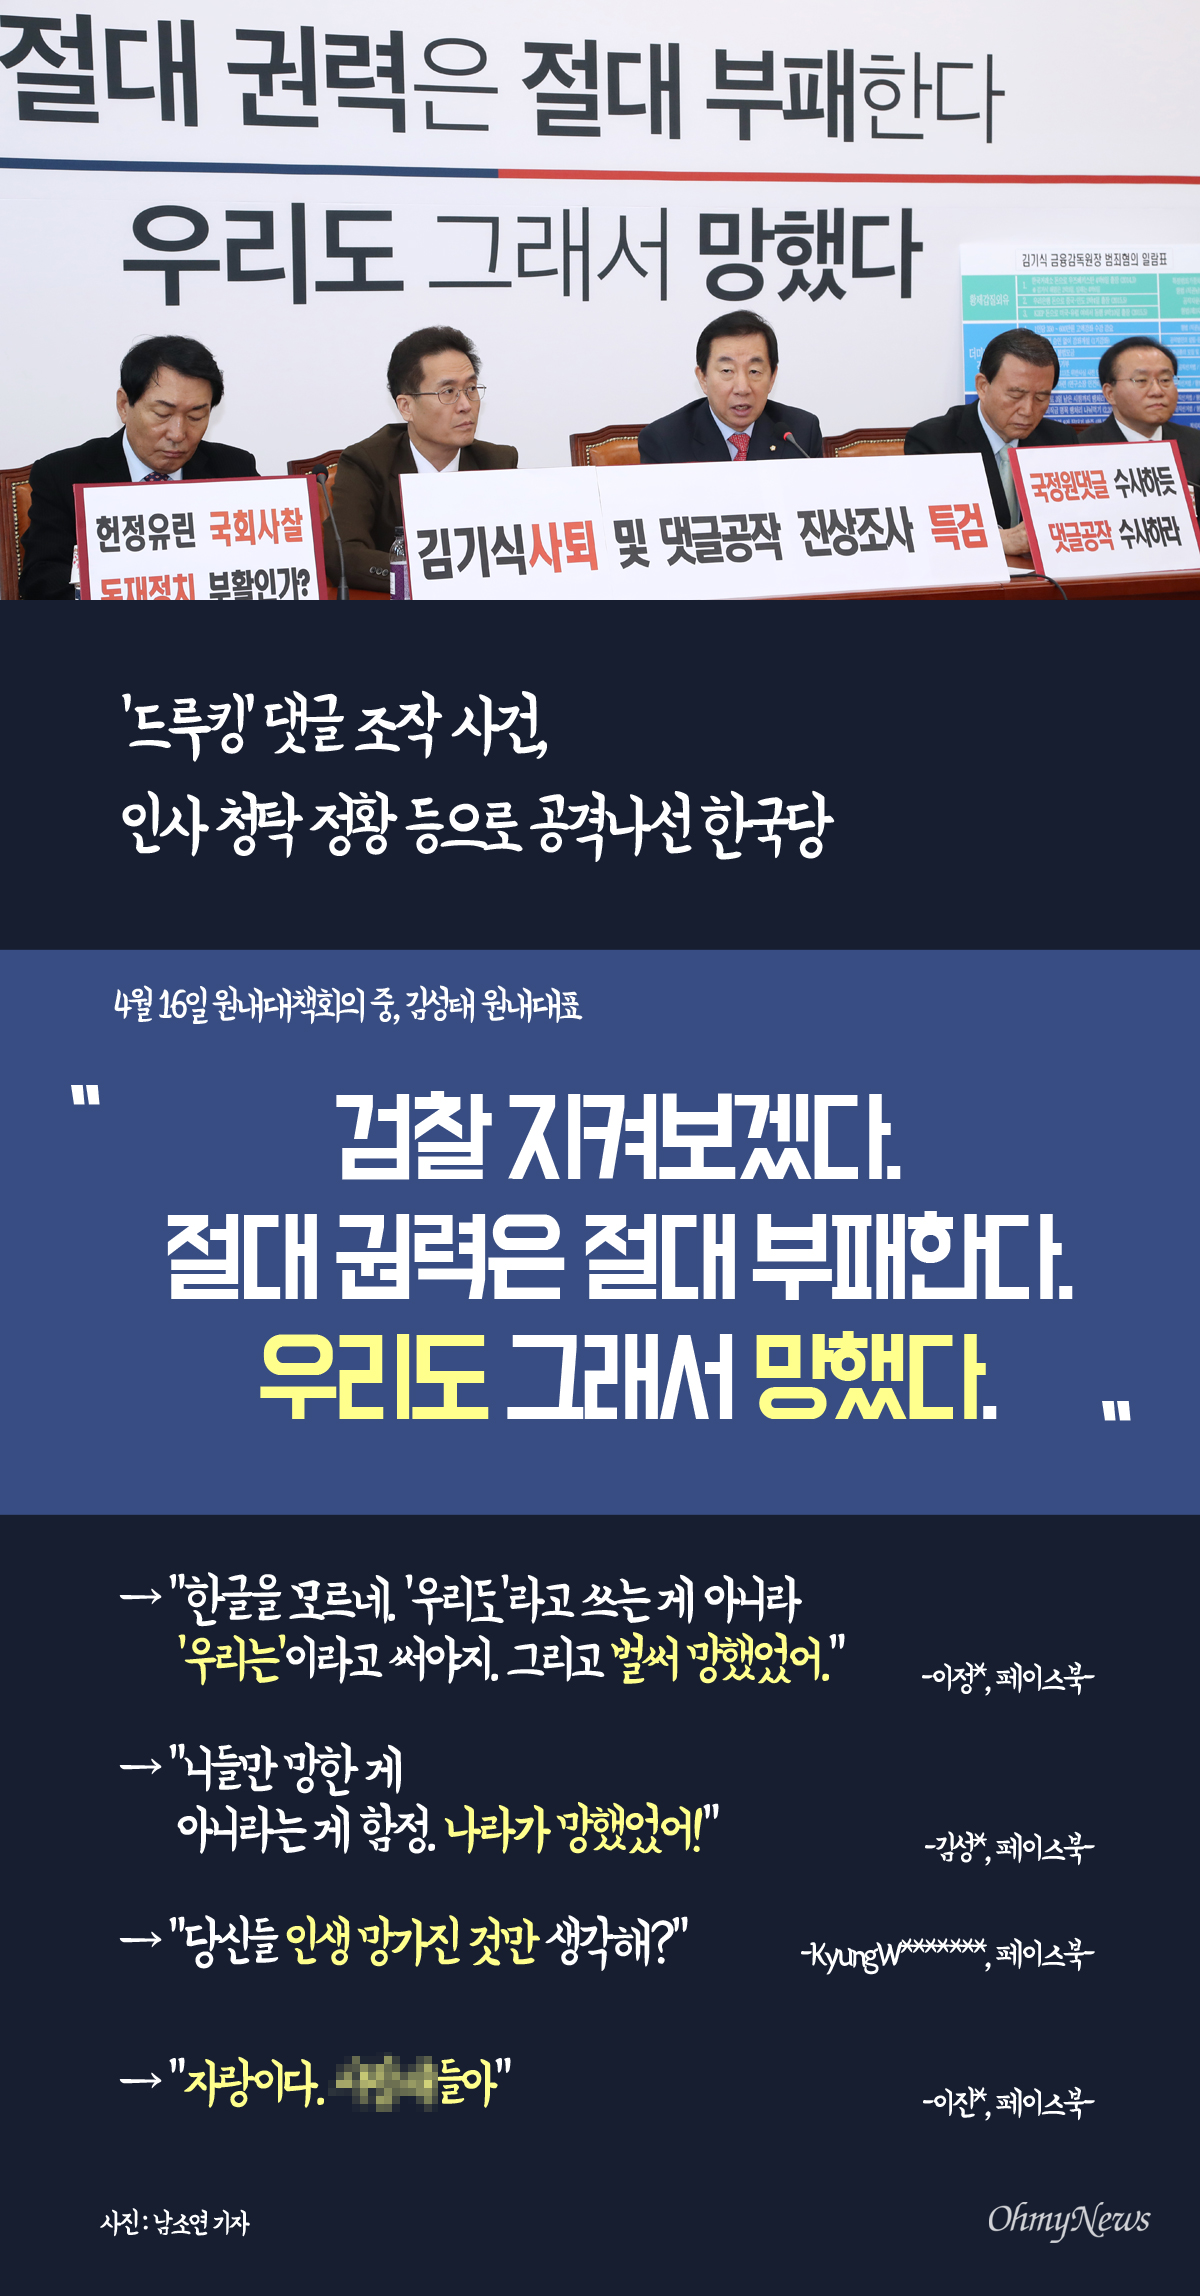 2018년 4월 16일 '댓글배달통' <"우리도 망했다"는 한국당... 망한 게 하나 더 있다는데> 기사.